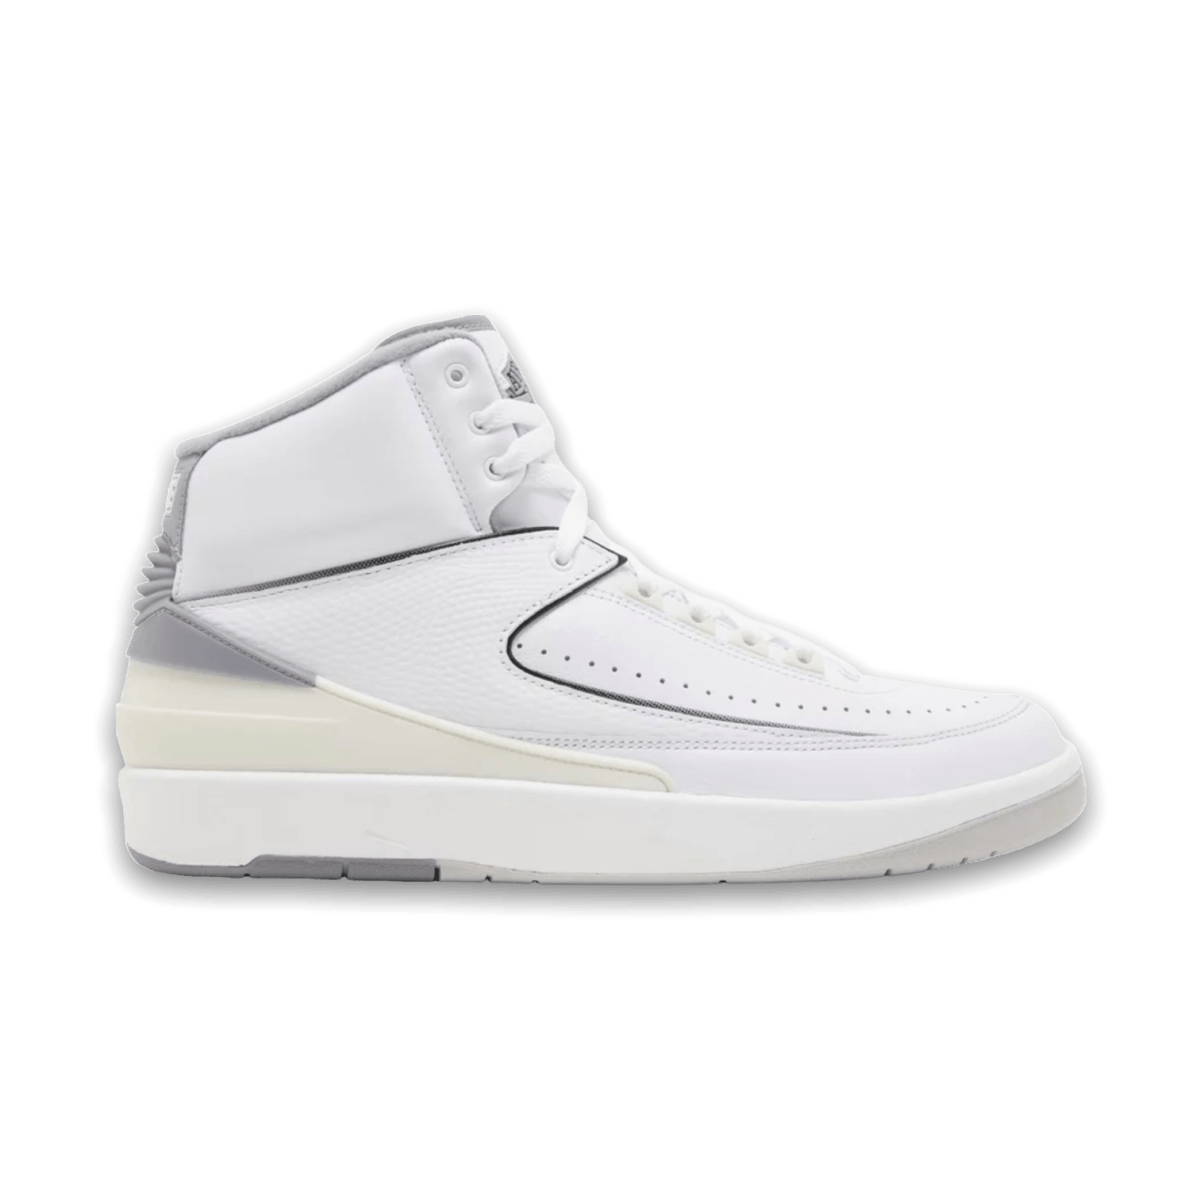 Air Jordan 2 Retro White Cement - Pre School - Mid Sneaker - Jawns on Fire Sneakers & Streetwear